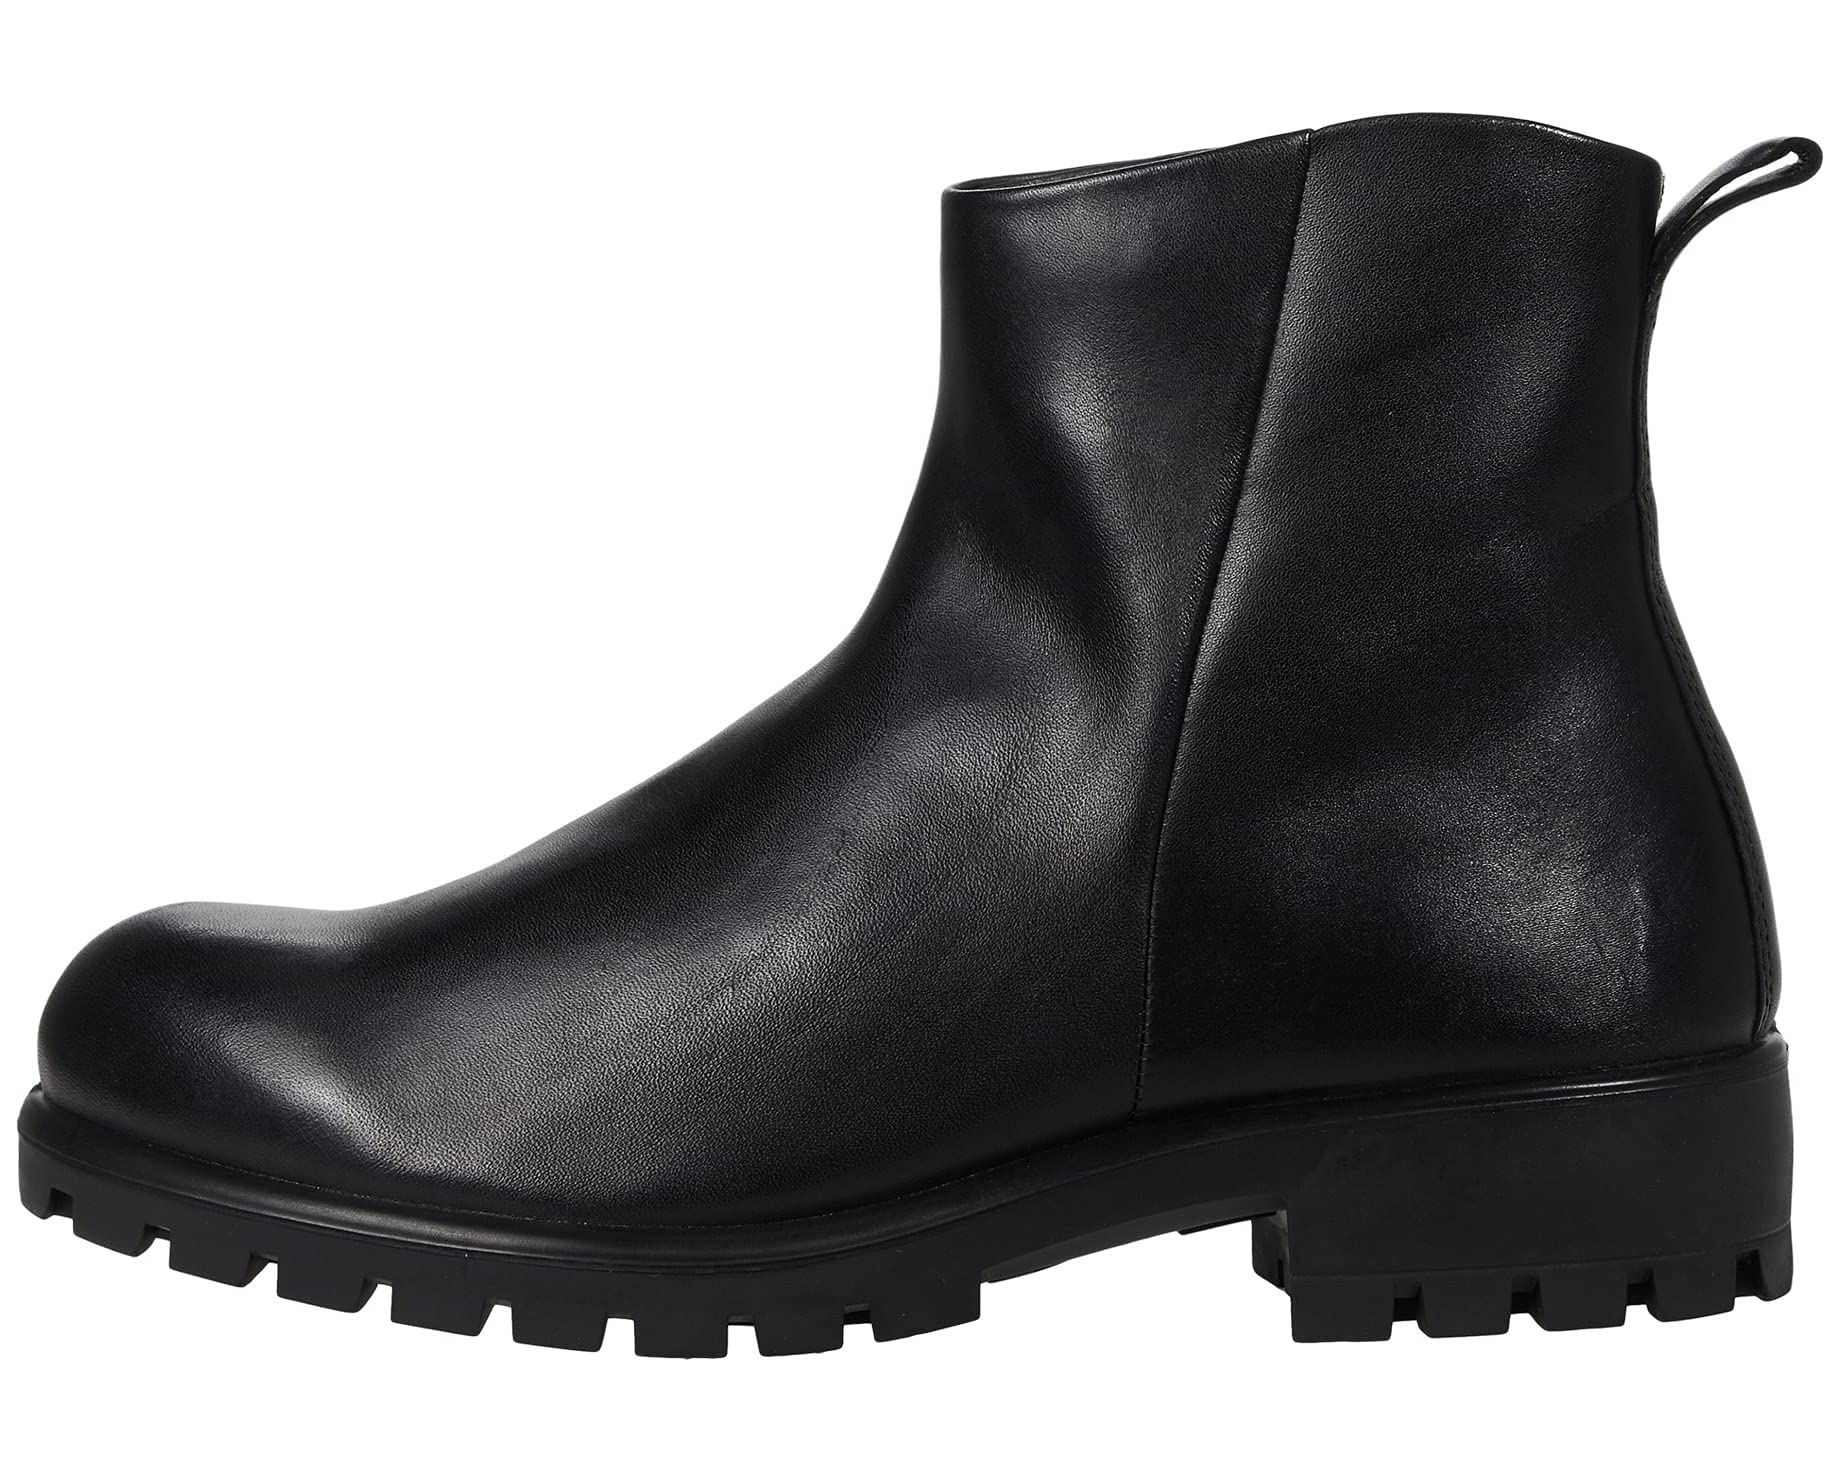 Ботинки Modtray Hydromax Ankle Boot ECCO, черный ботинки высокие ecco modtray w коричневый 36 размер